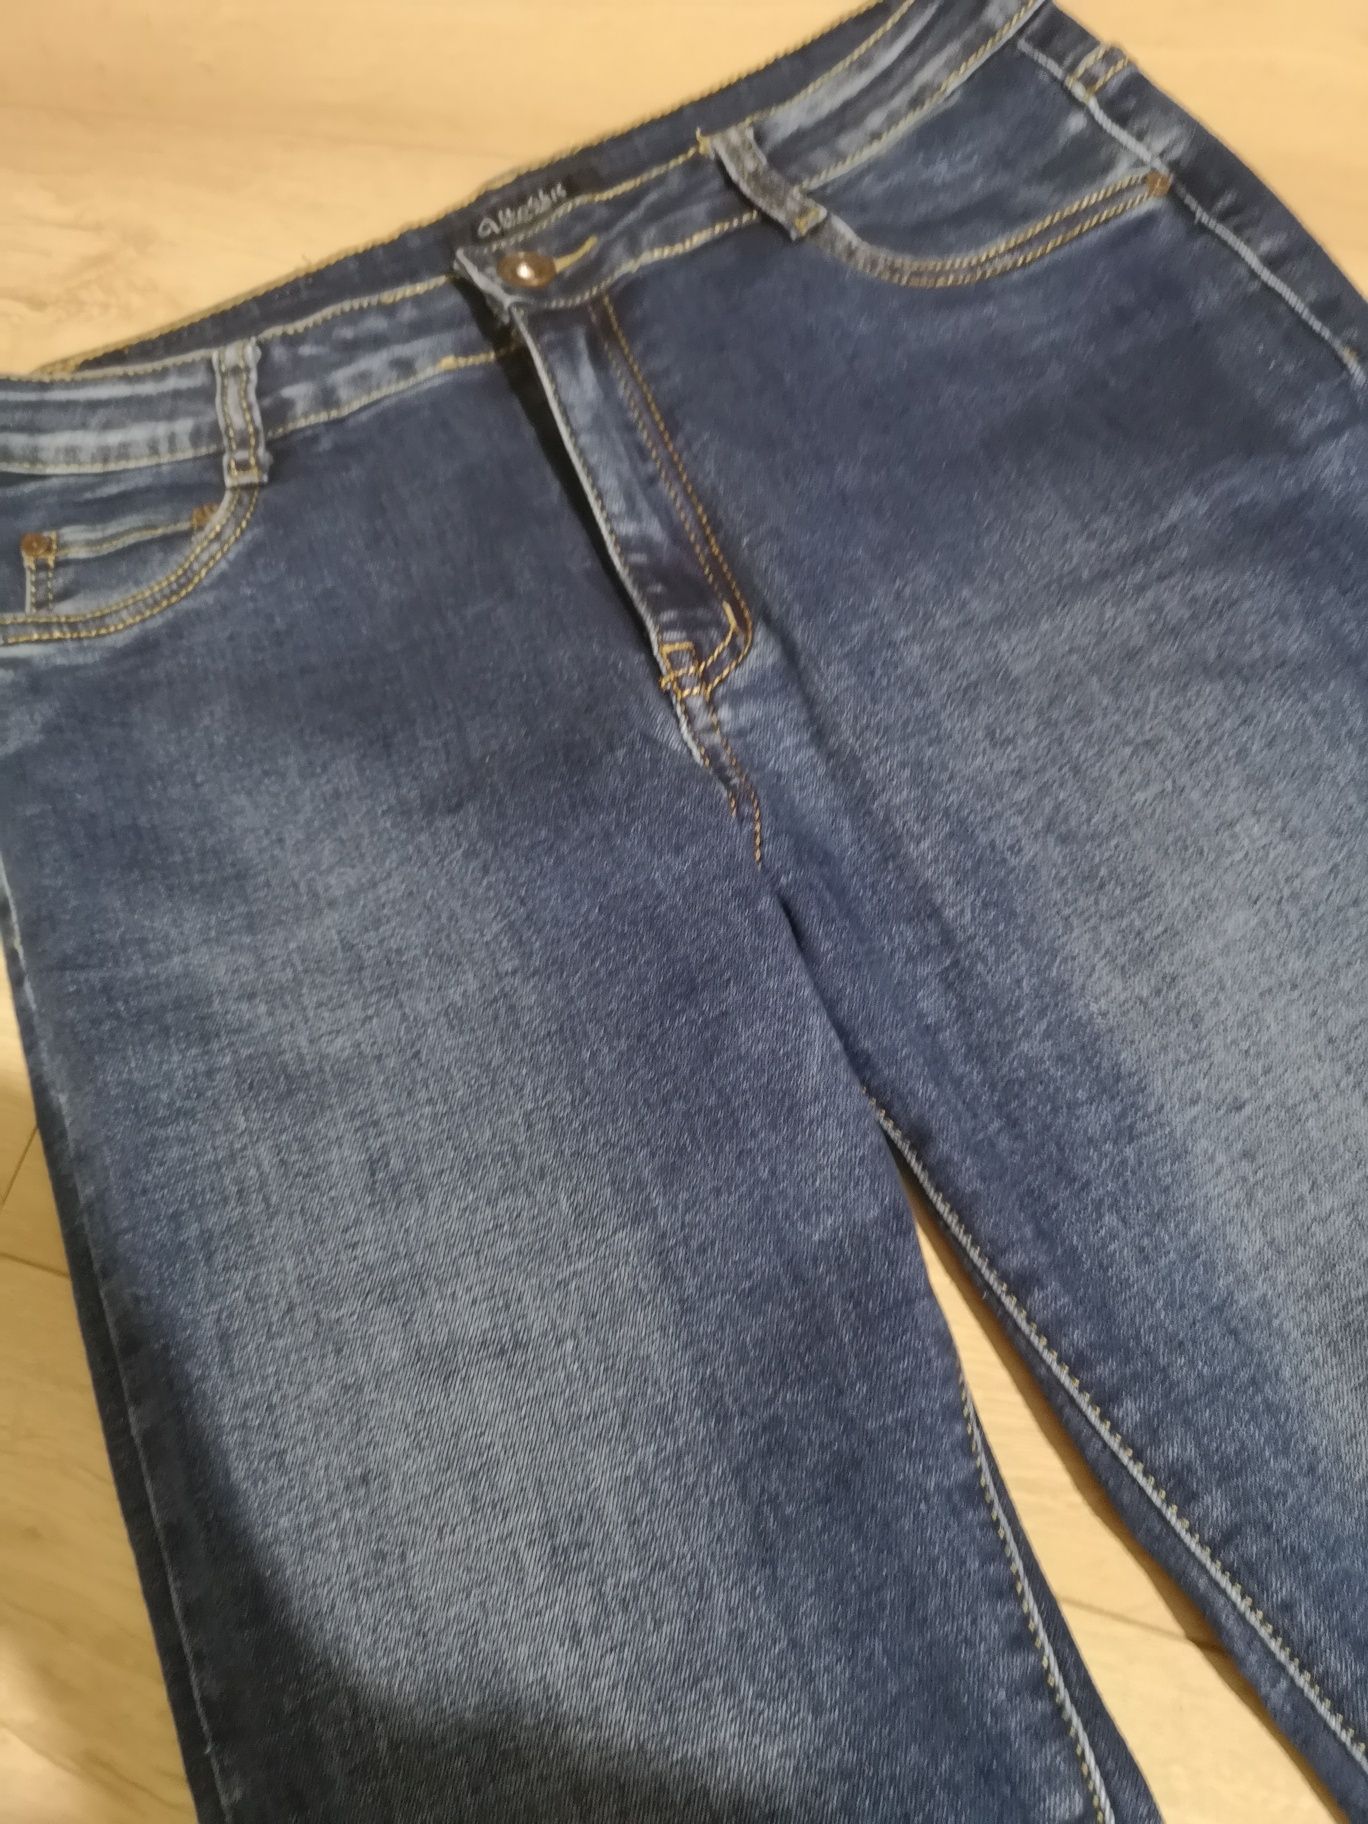 Spodnie jeans dżinsy damskie 40 L długie ciemne cieniowane